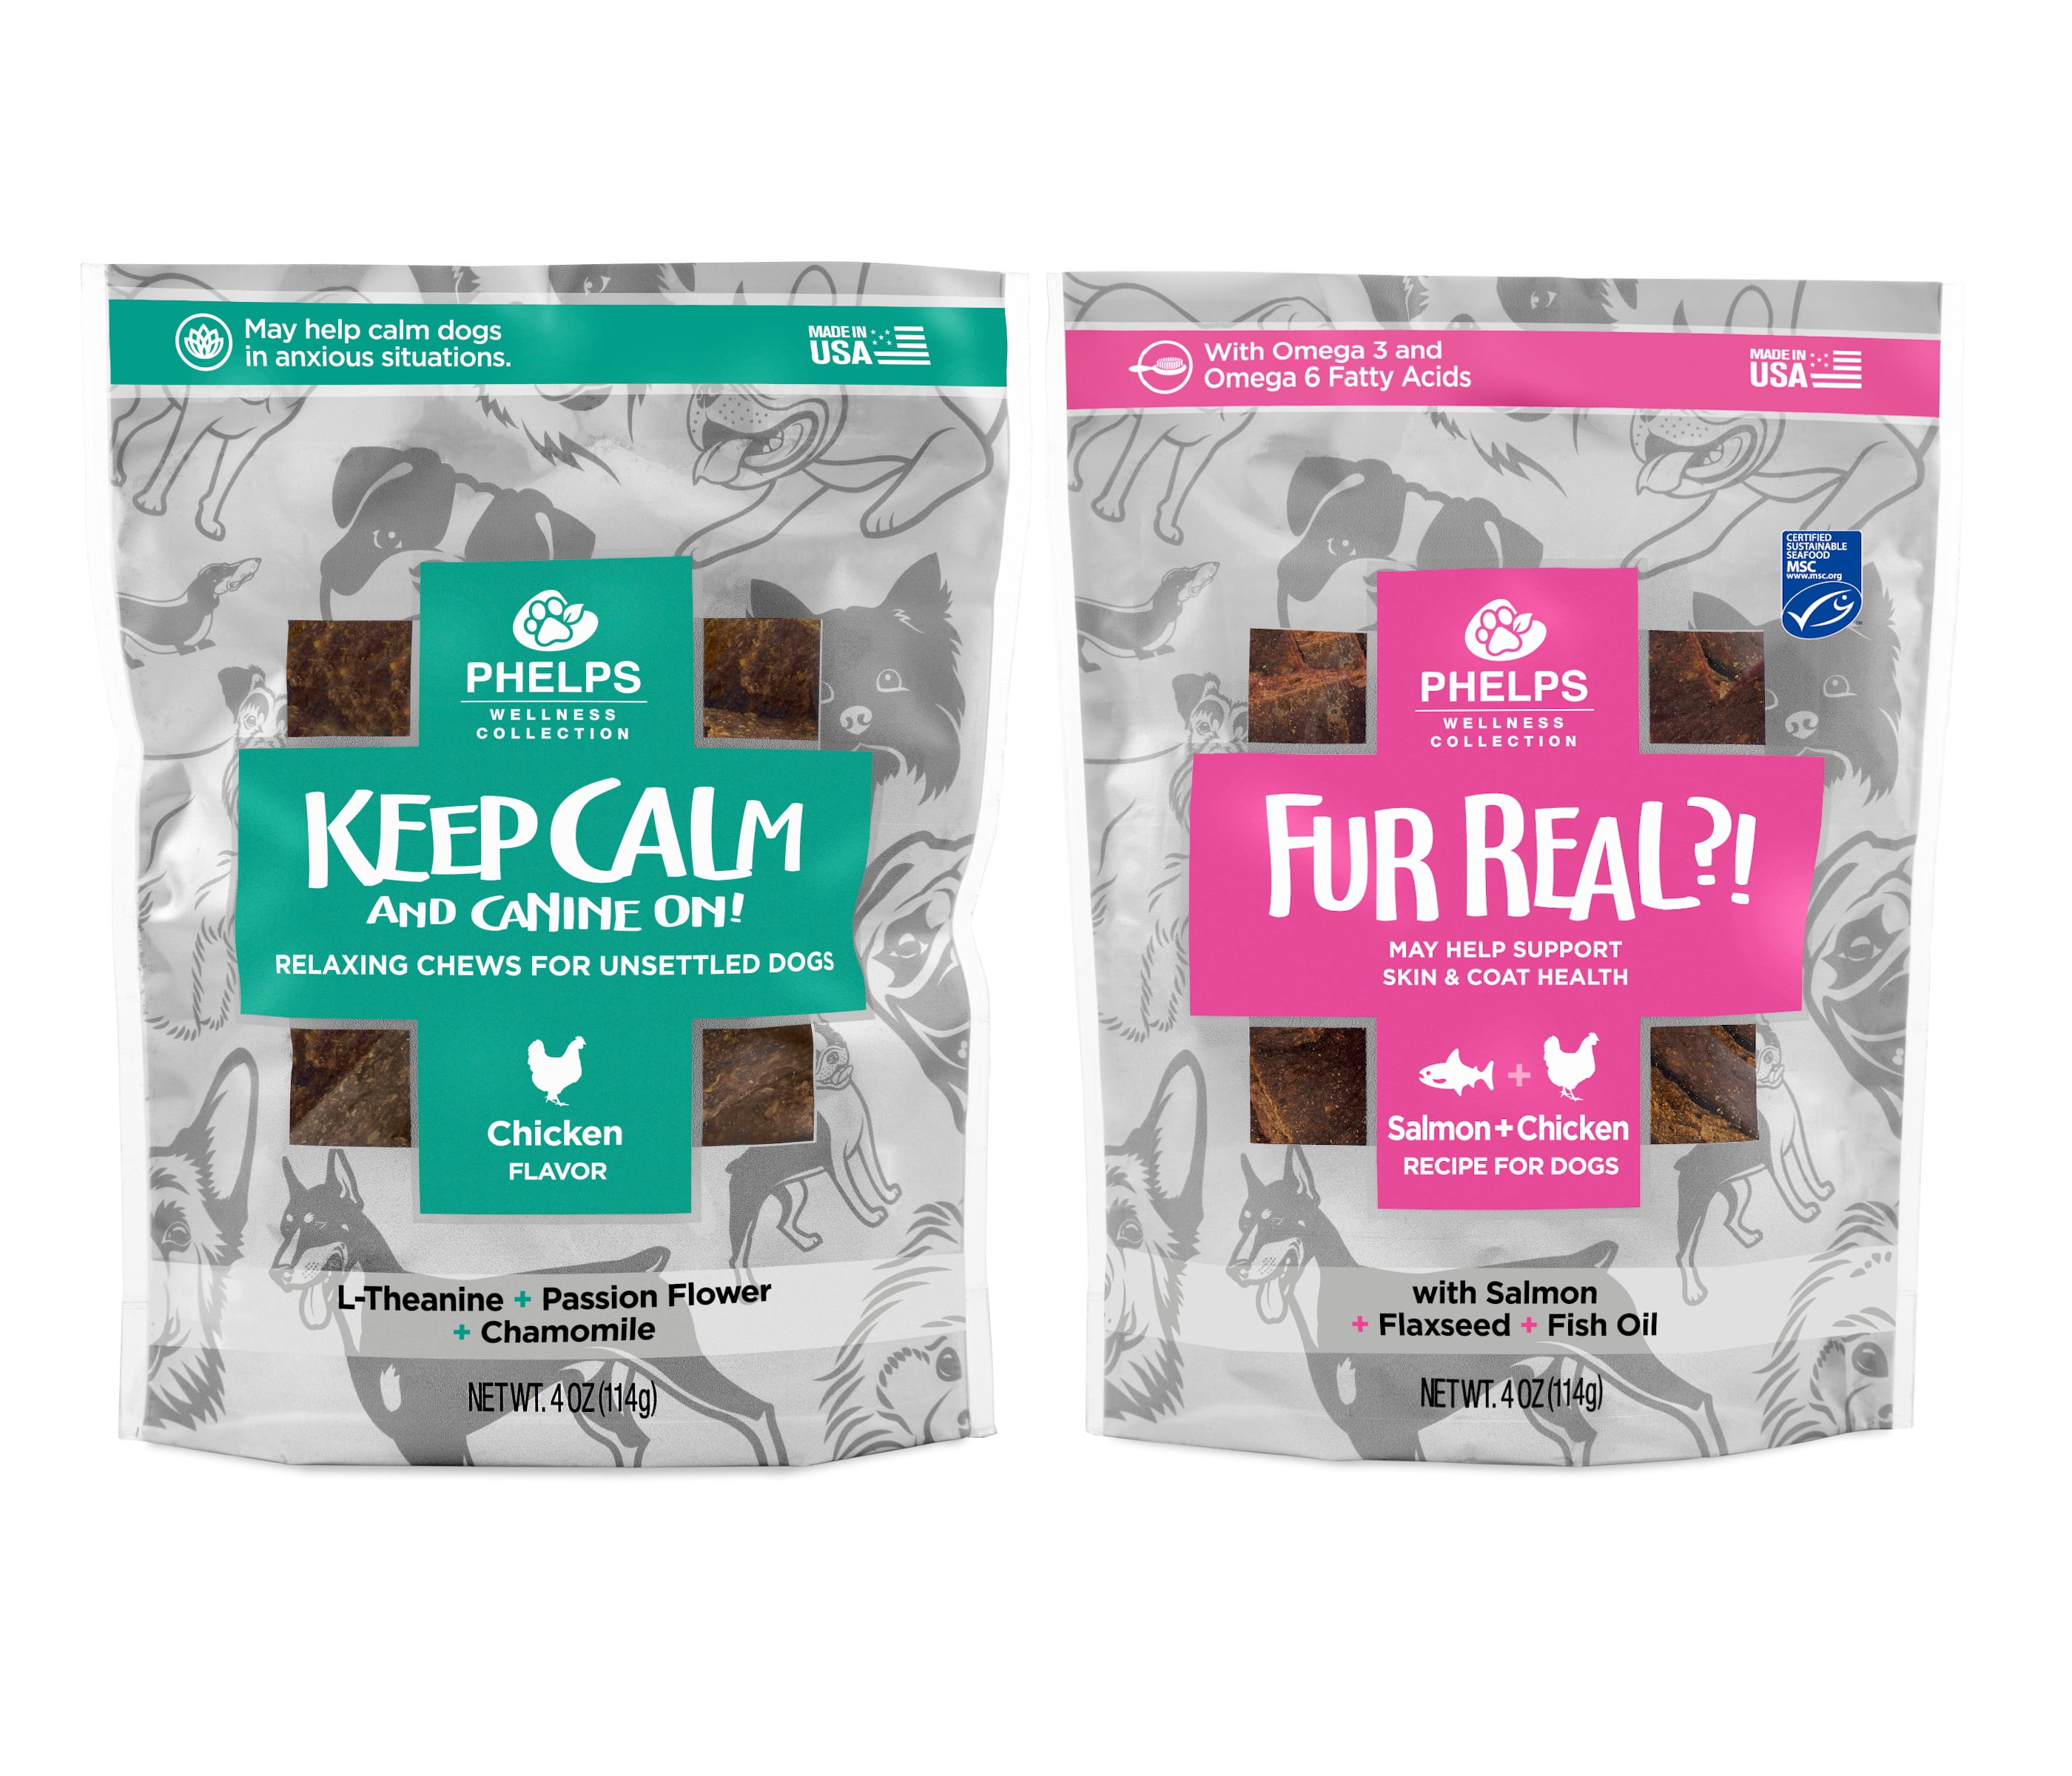 fur real dog food